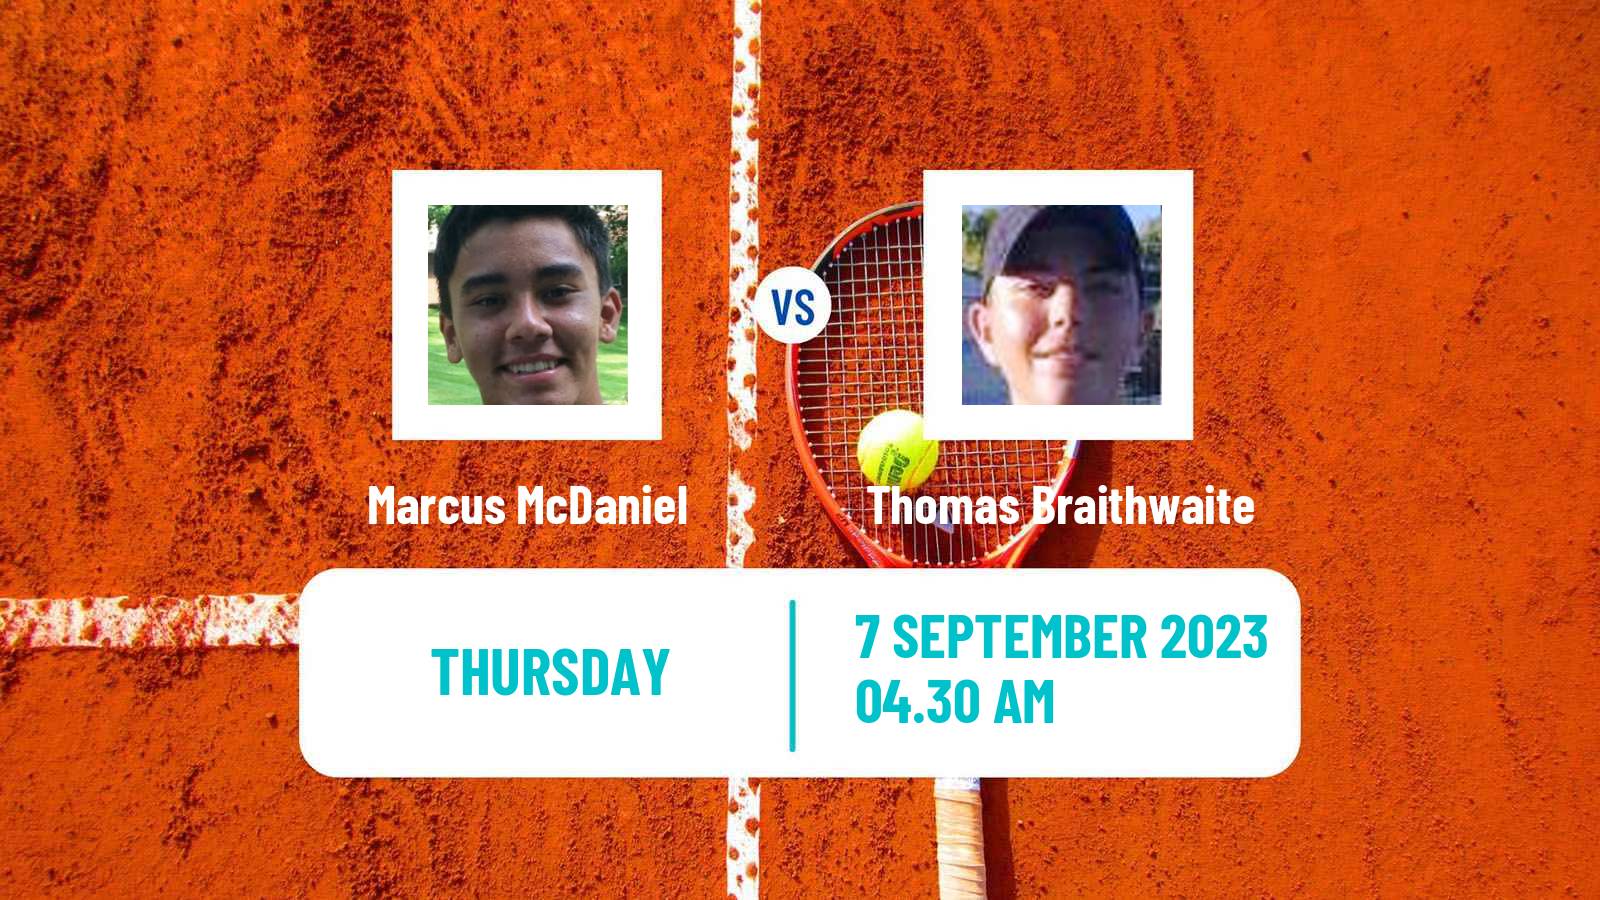 Tennis ITF M25 Monastir 5 Men Marcus McDaniel - Thomas Braithwaite